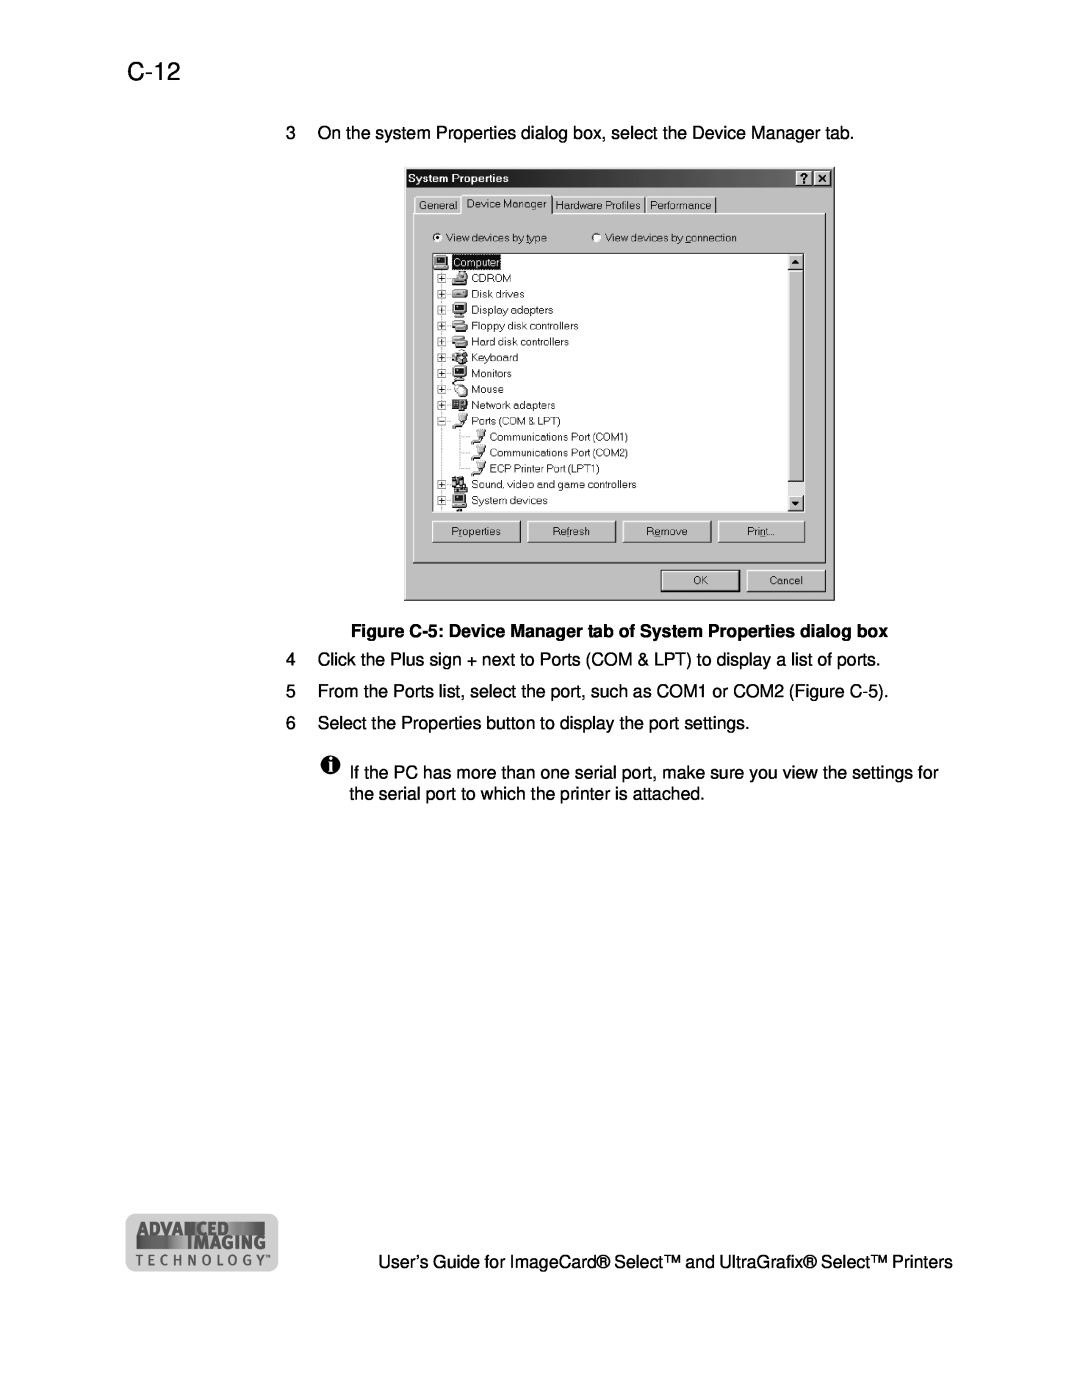 Datacard Group ImageCard SelectTM and UltraGrafix SelectTM Printers manual C-12 